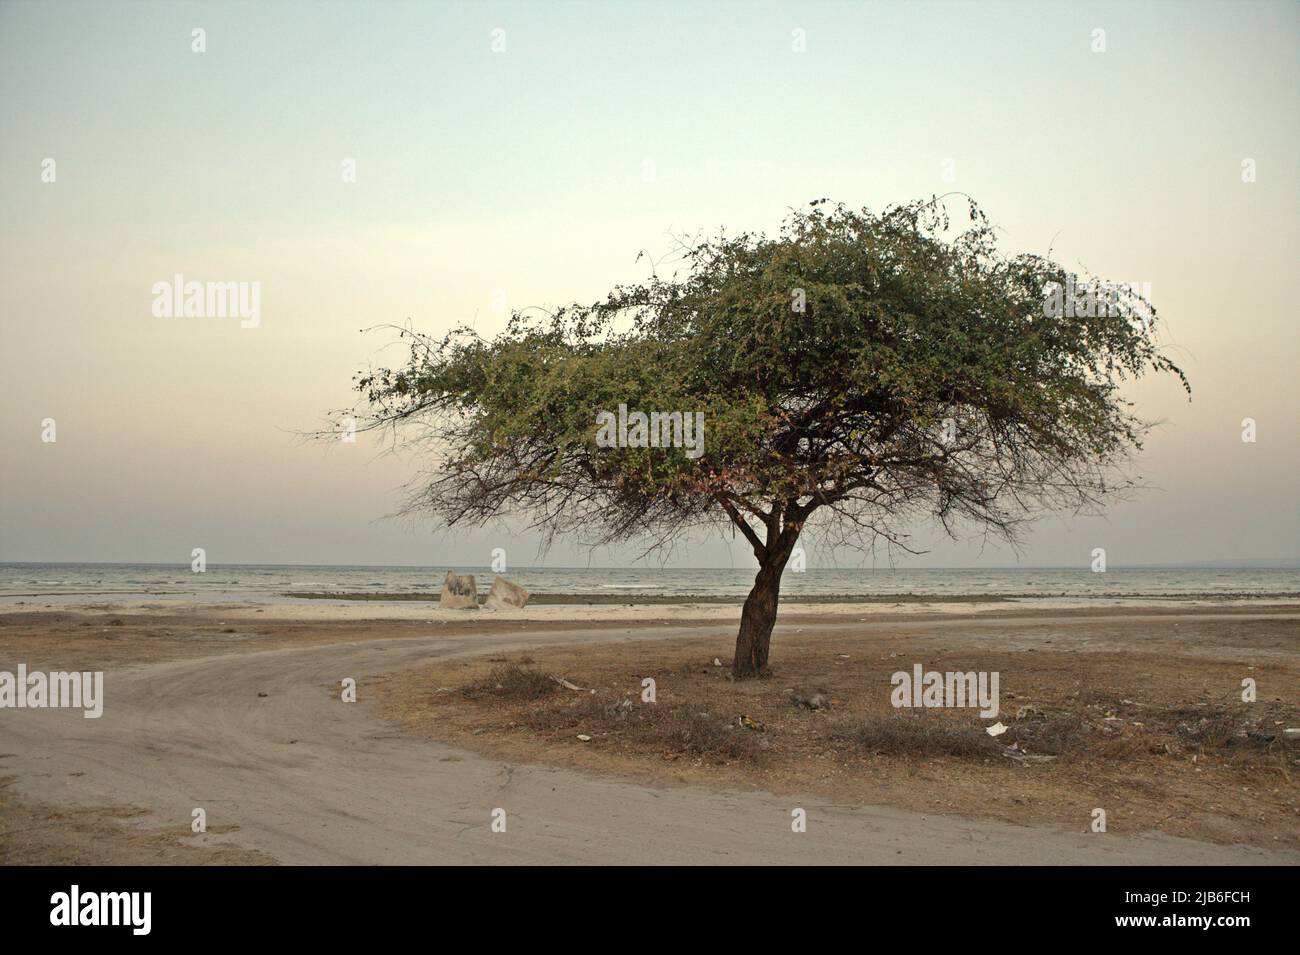 Ein Baum mit trockenem Klima an einem Strand in Mondu, Kanatang, East Sumba, East Nusa Tenggara, Indonesien. Dieser Strand könnte zu den halben Sandstränden der Welt gehören, die bis zum Ende des Jahrhunderts verschwinden könnten, wenn der Klimawandel unvermindert weitergeht, wie Klimawissenschaftler in ihrer Publikation über Nature Climate Change vom März 2020 berichteten. Stockfoto